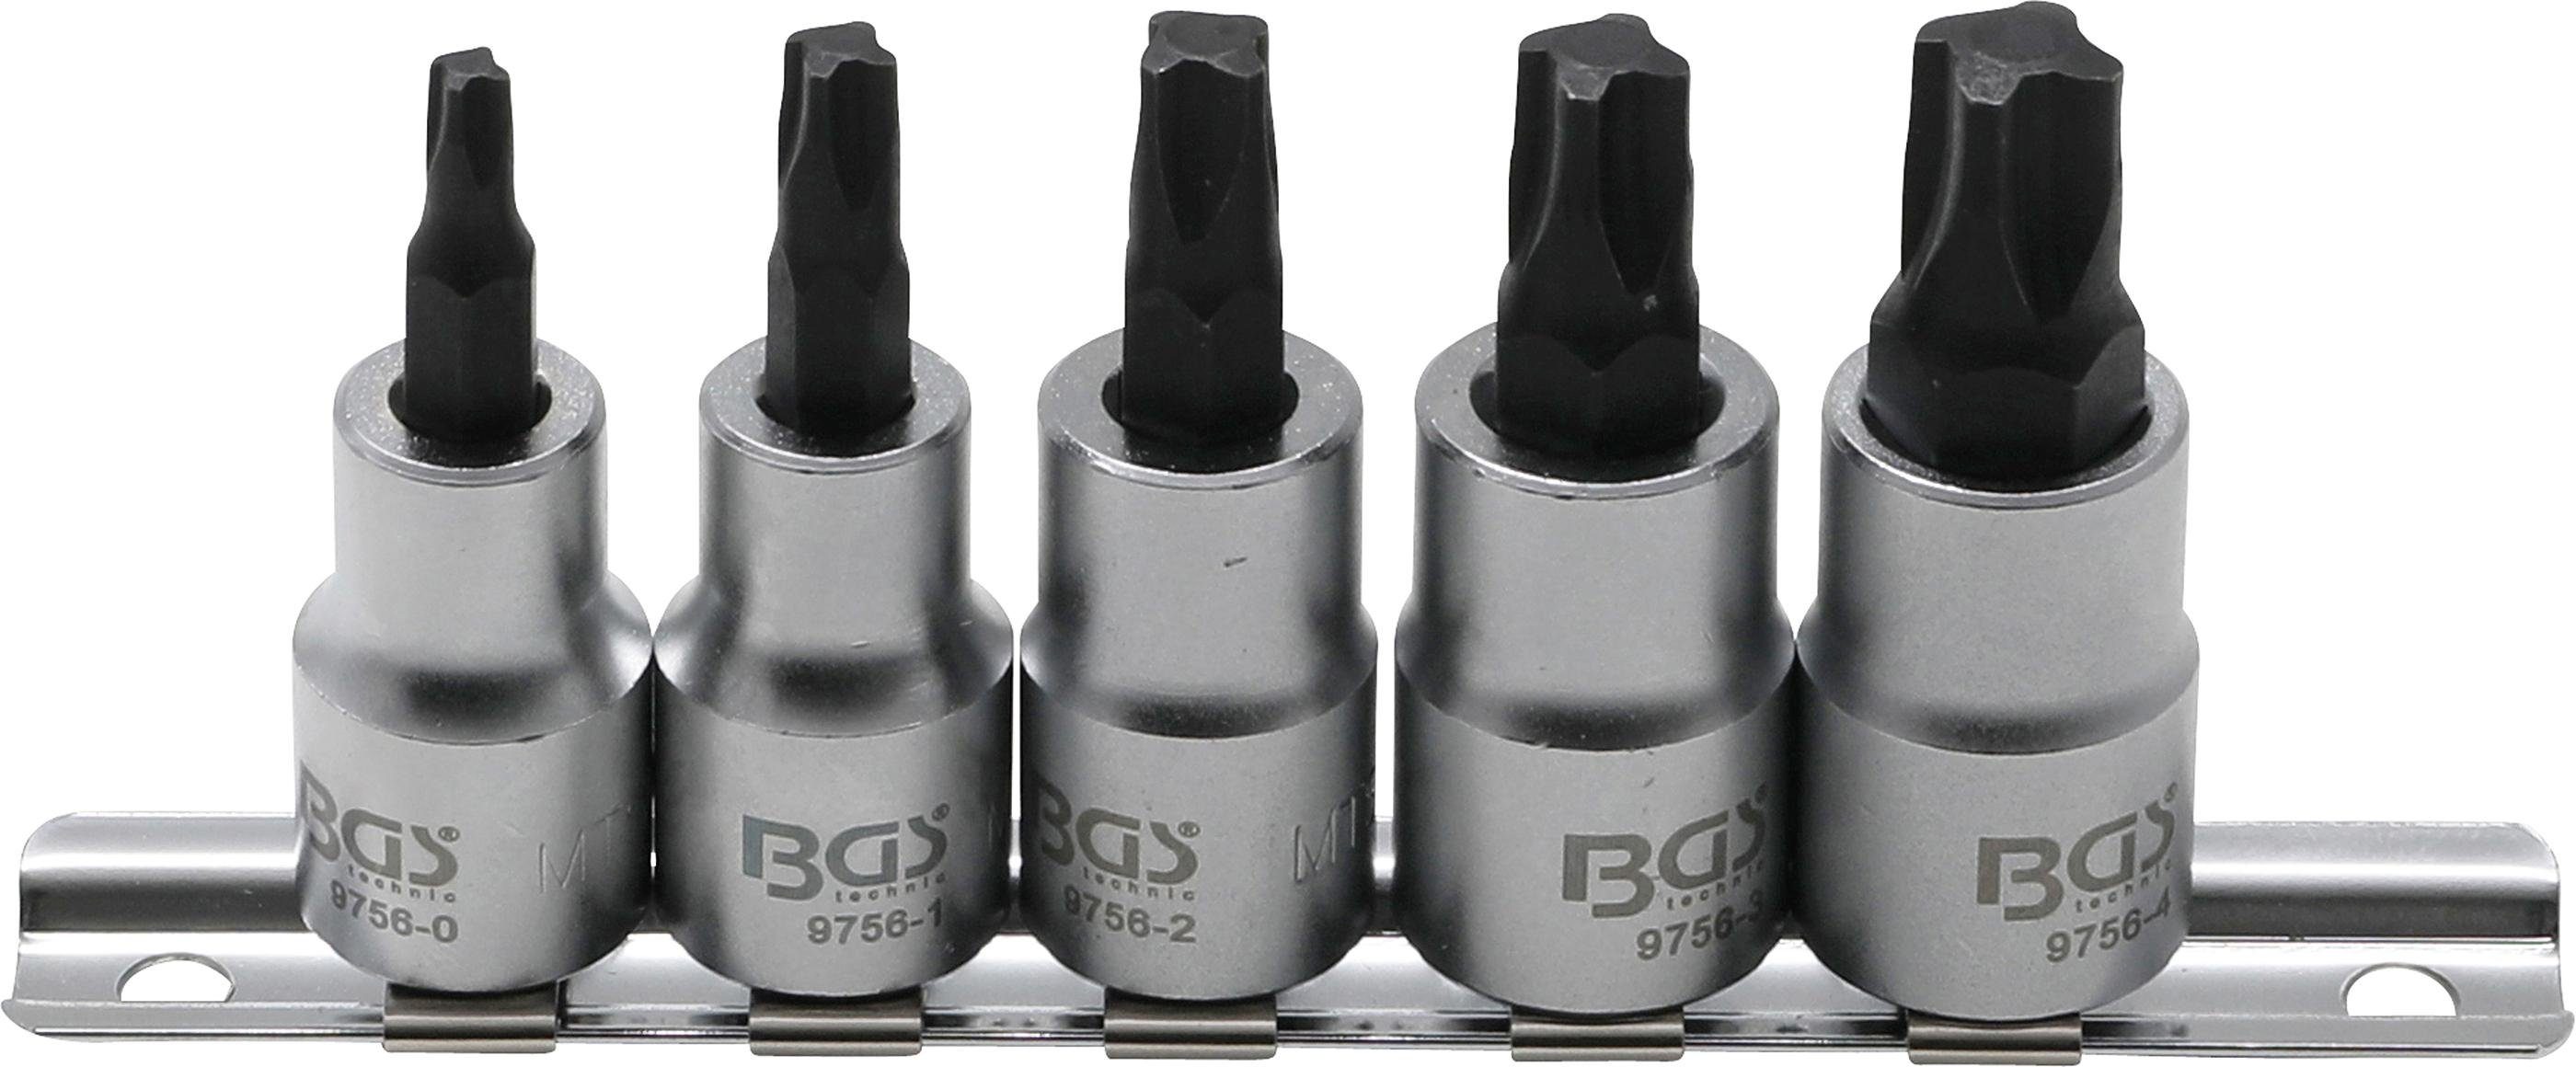 BGS technic Bit-Set Bit-Einsatz-Satz, Antrieb Innenvierkant 10 mm (3/8), 4-kant Profil (für MTS-Mortorq) MTS0 - MTS04, 5-tlg.